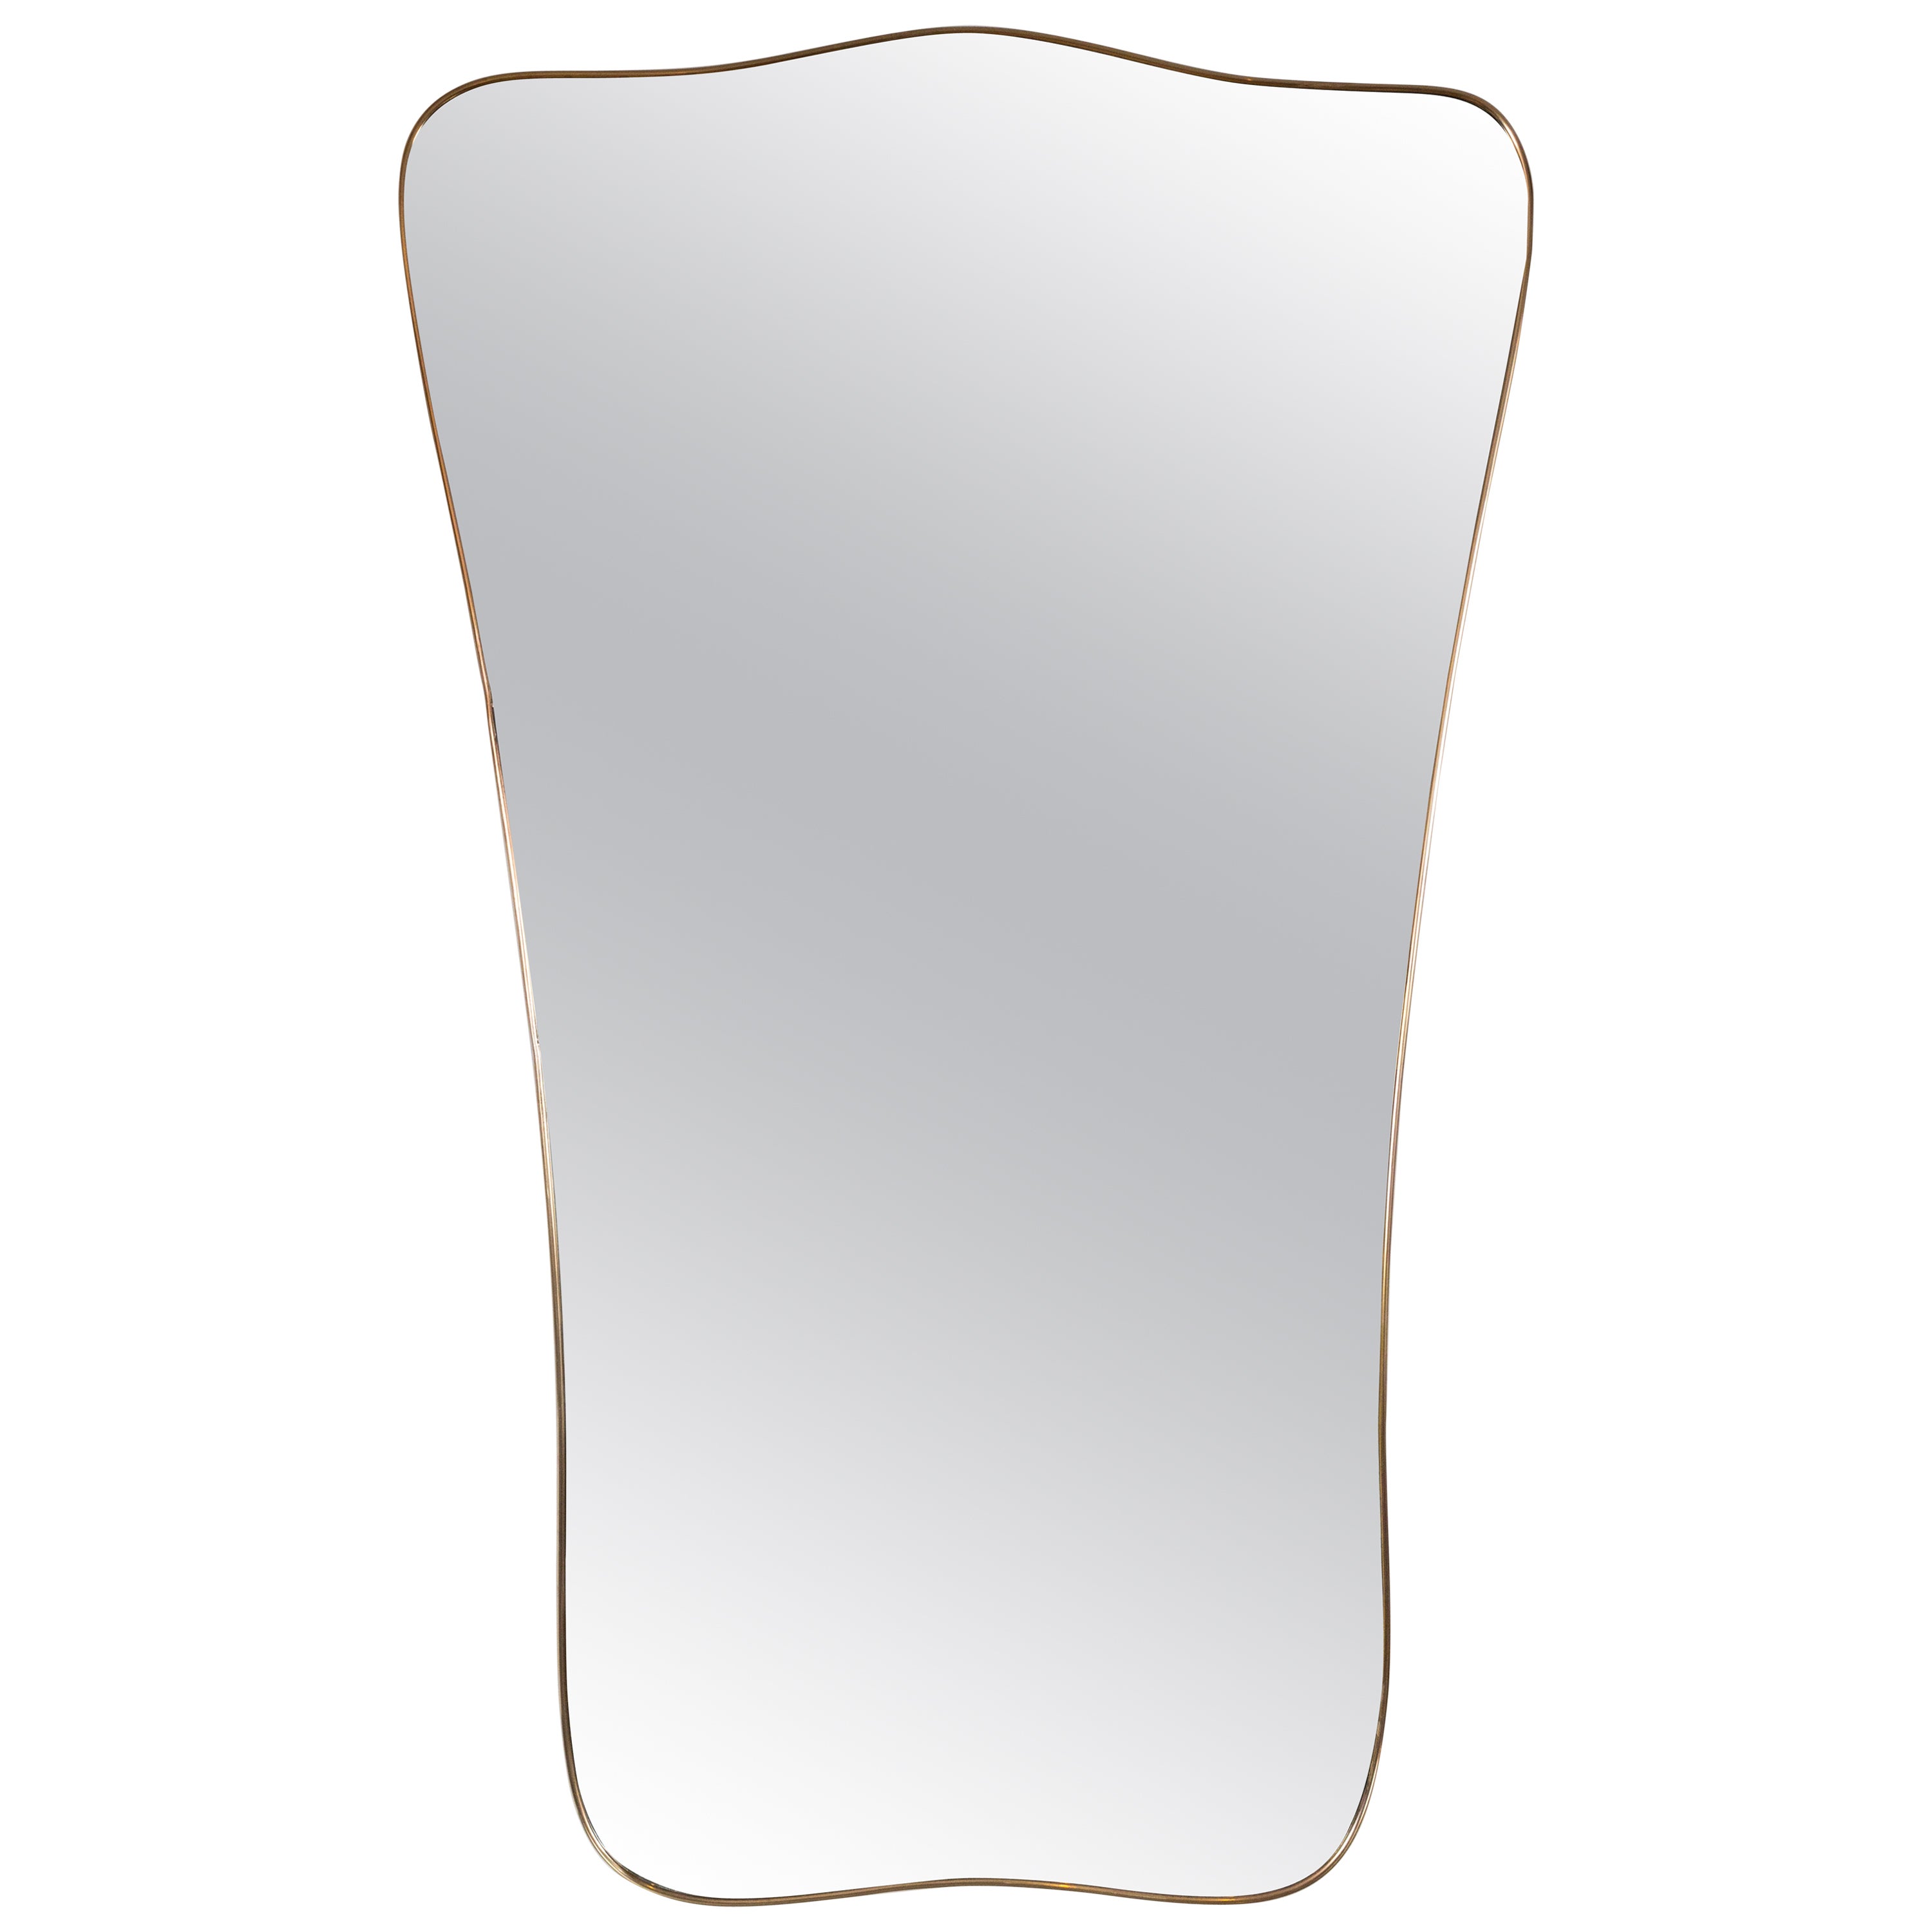 Gigantischer italienischer Design-Spiegel aus Messing in Form eines Schildes